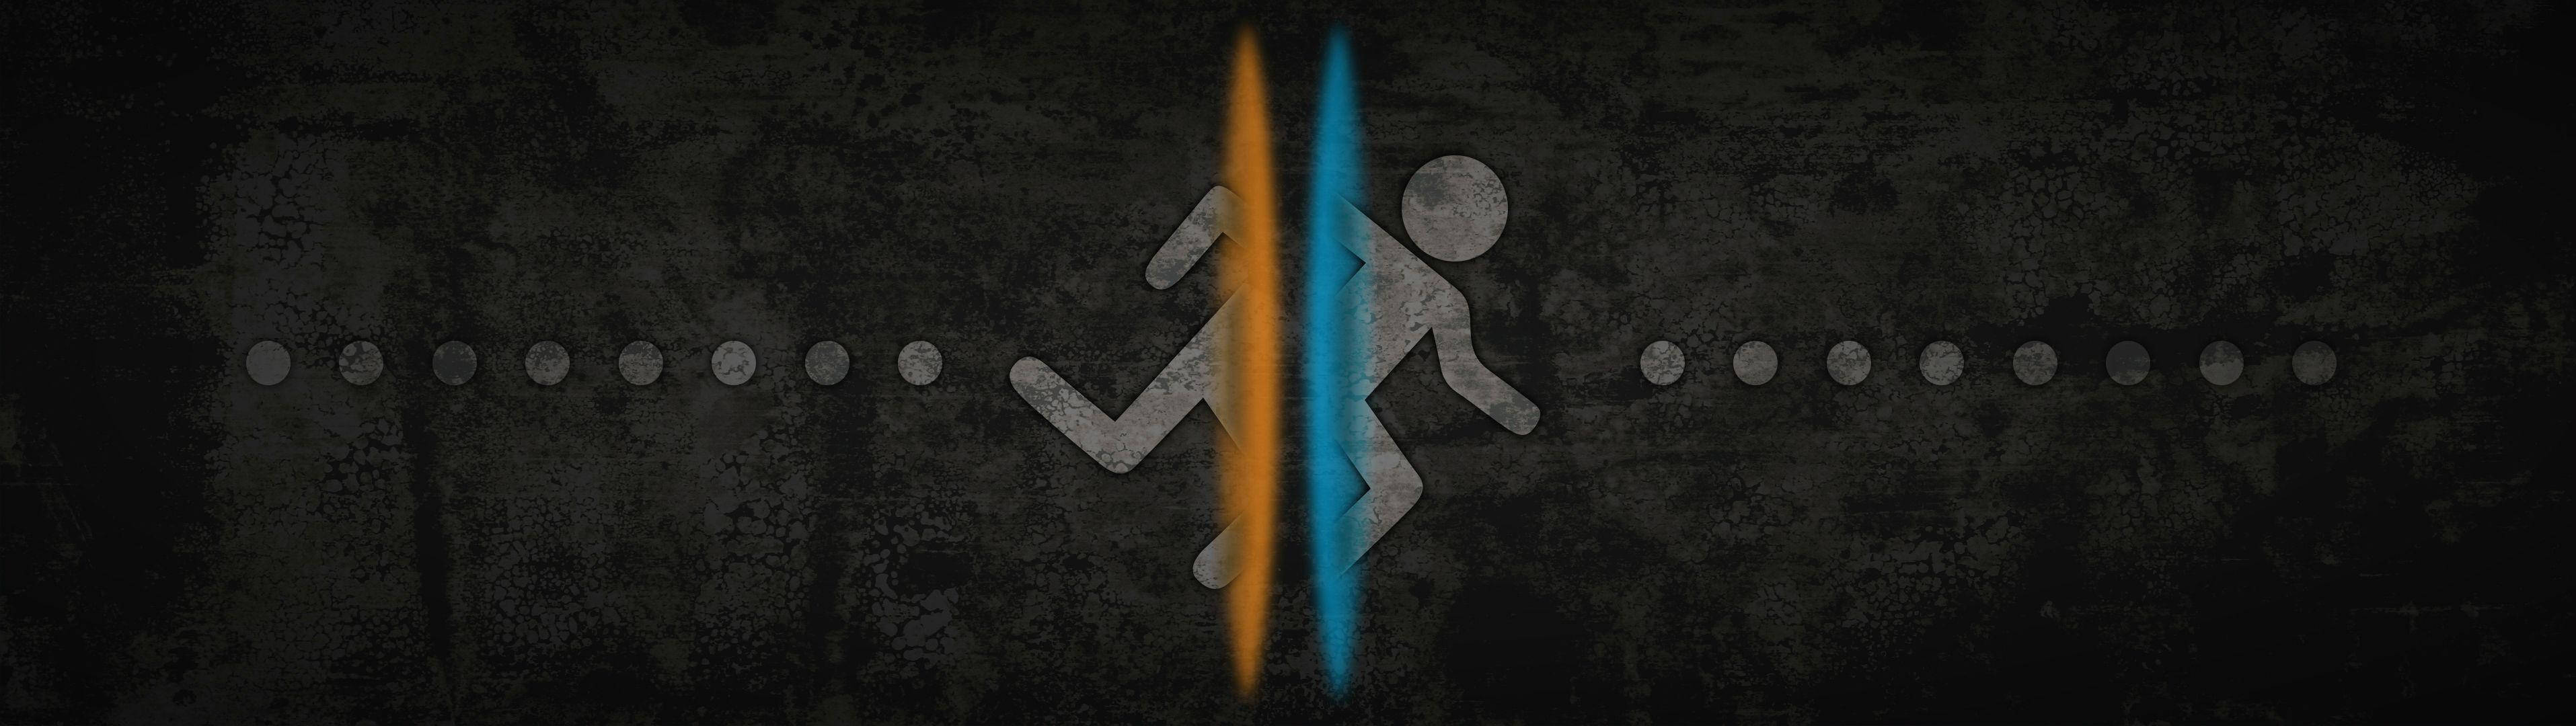 Running Man Digital Art For Split Monitors Wallpaper